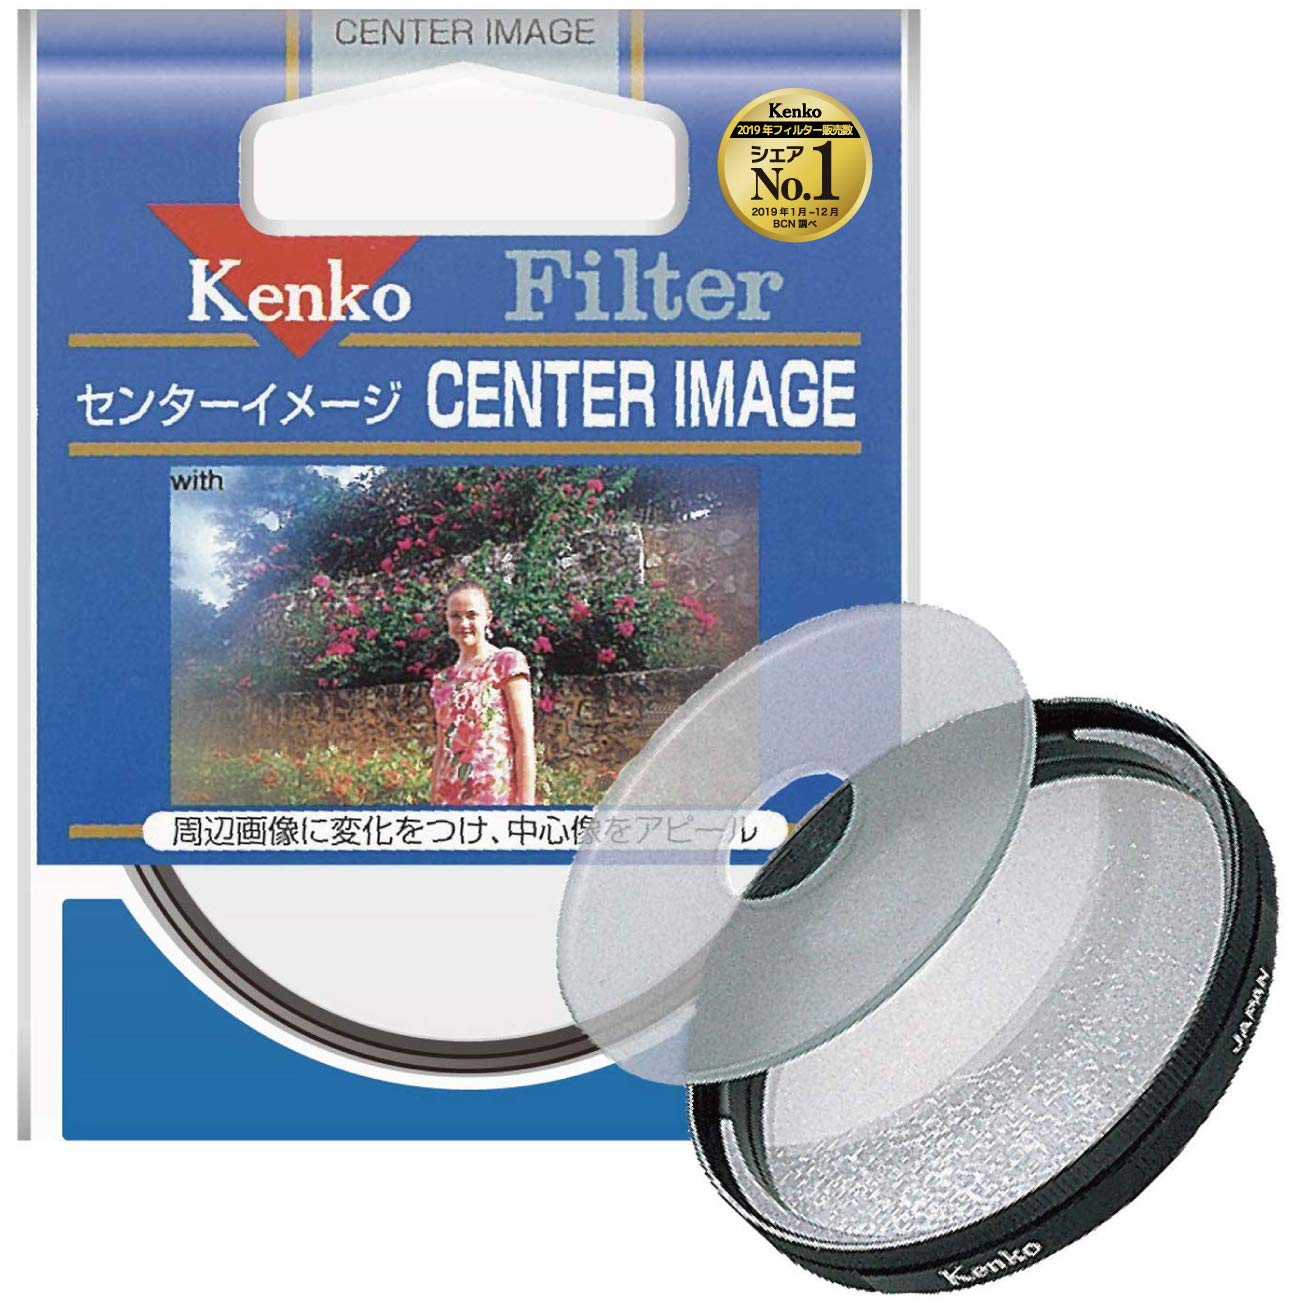 Kenko レンズフィルター センターイメージ 52mm ソフト描写用 352335